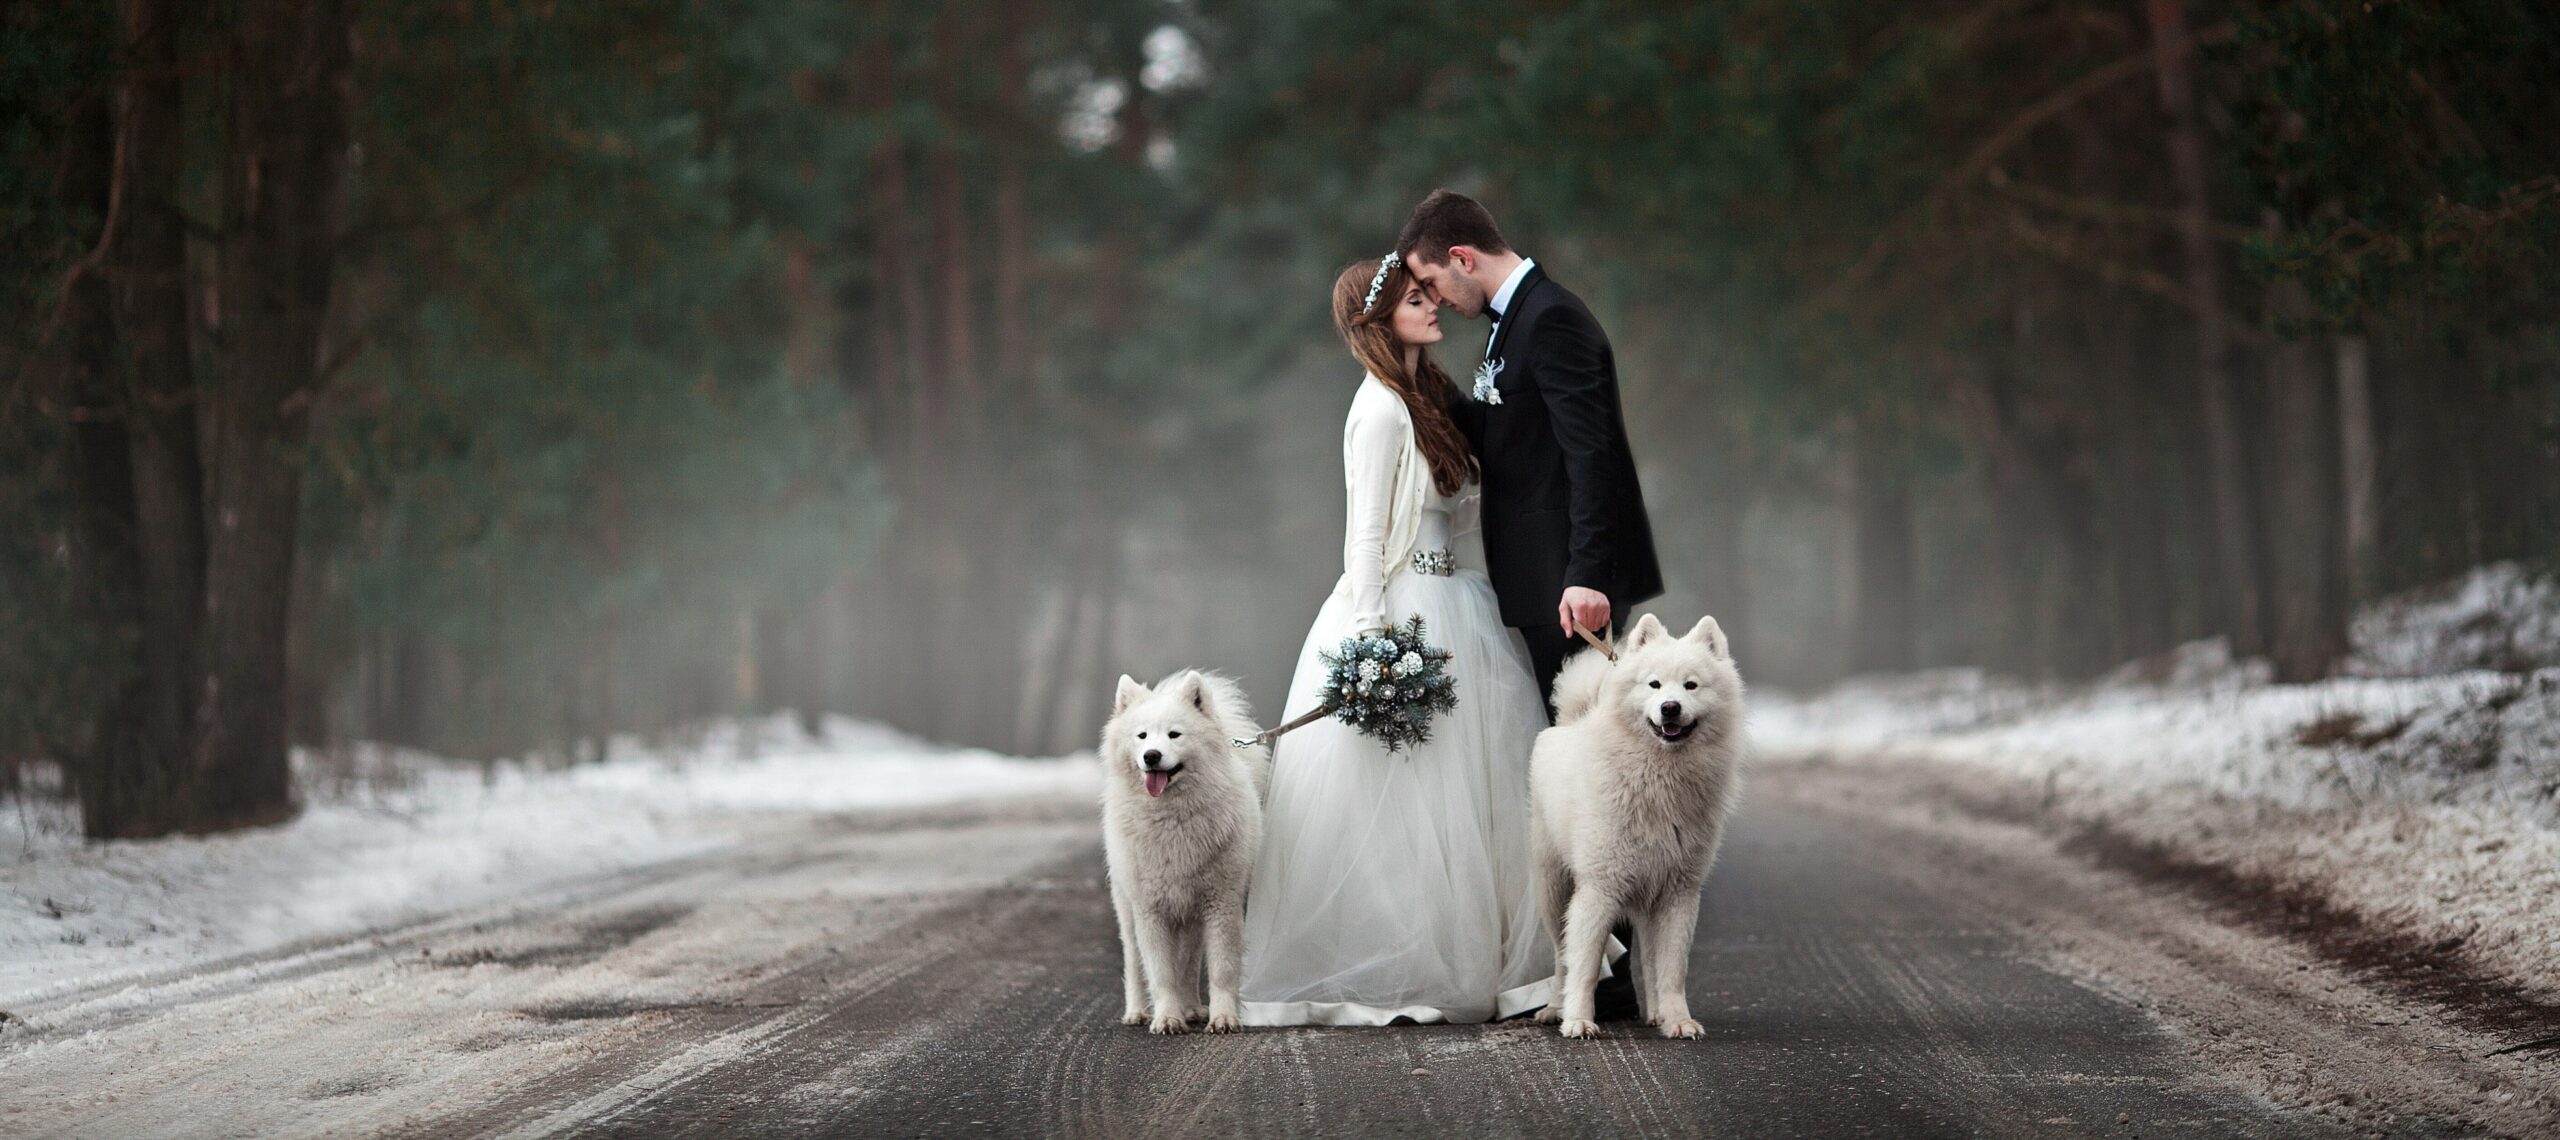 Sposarsi invitando il cane al matrimonio: la nuova tendenza